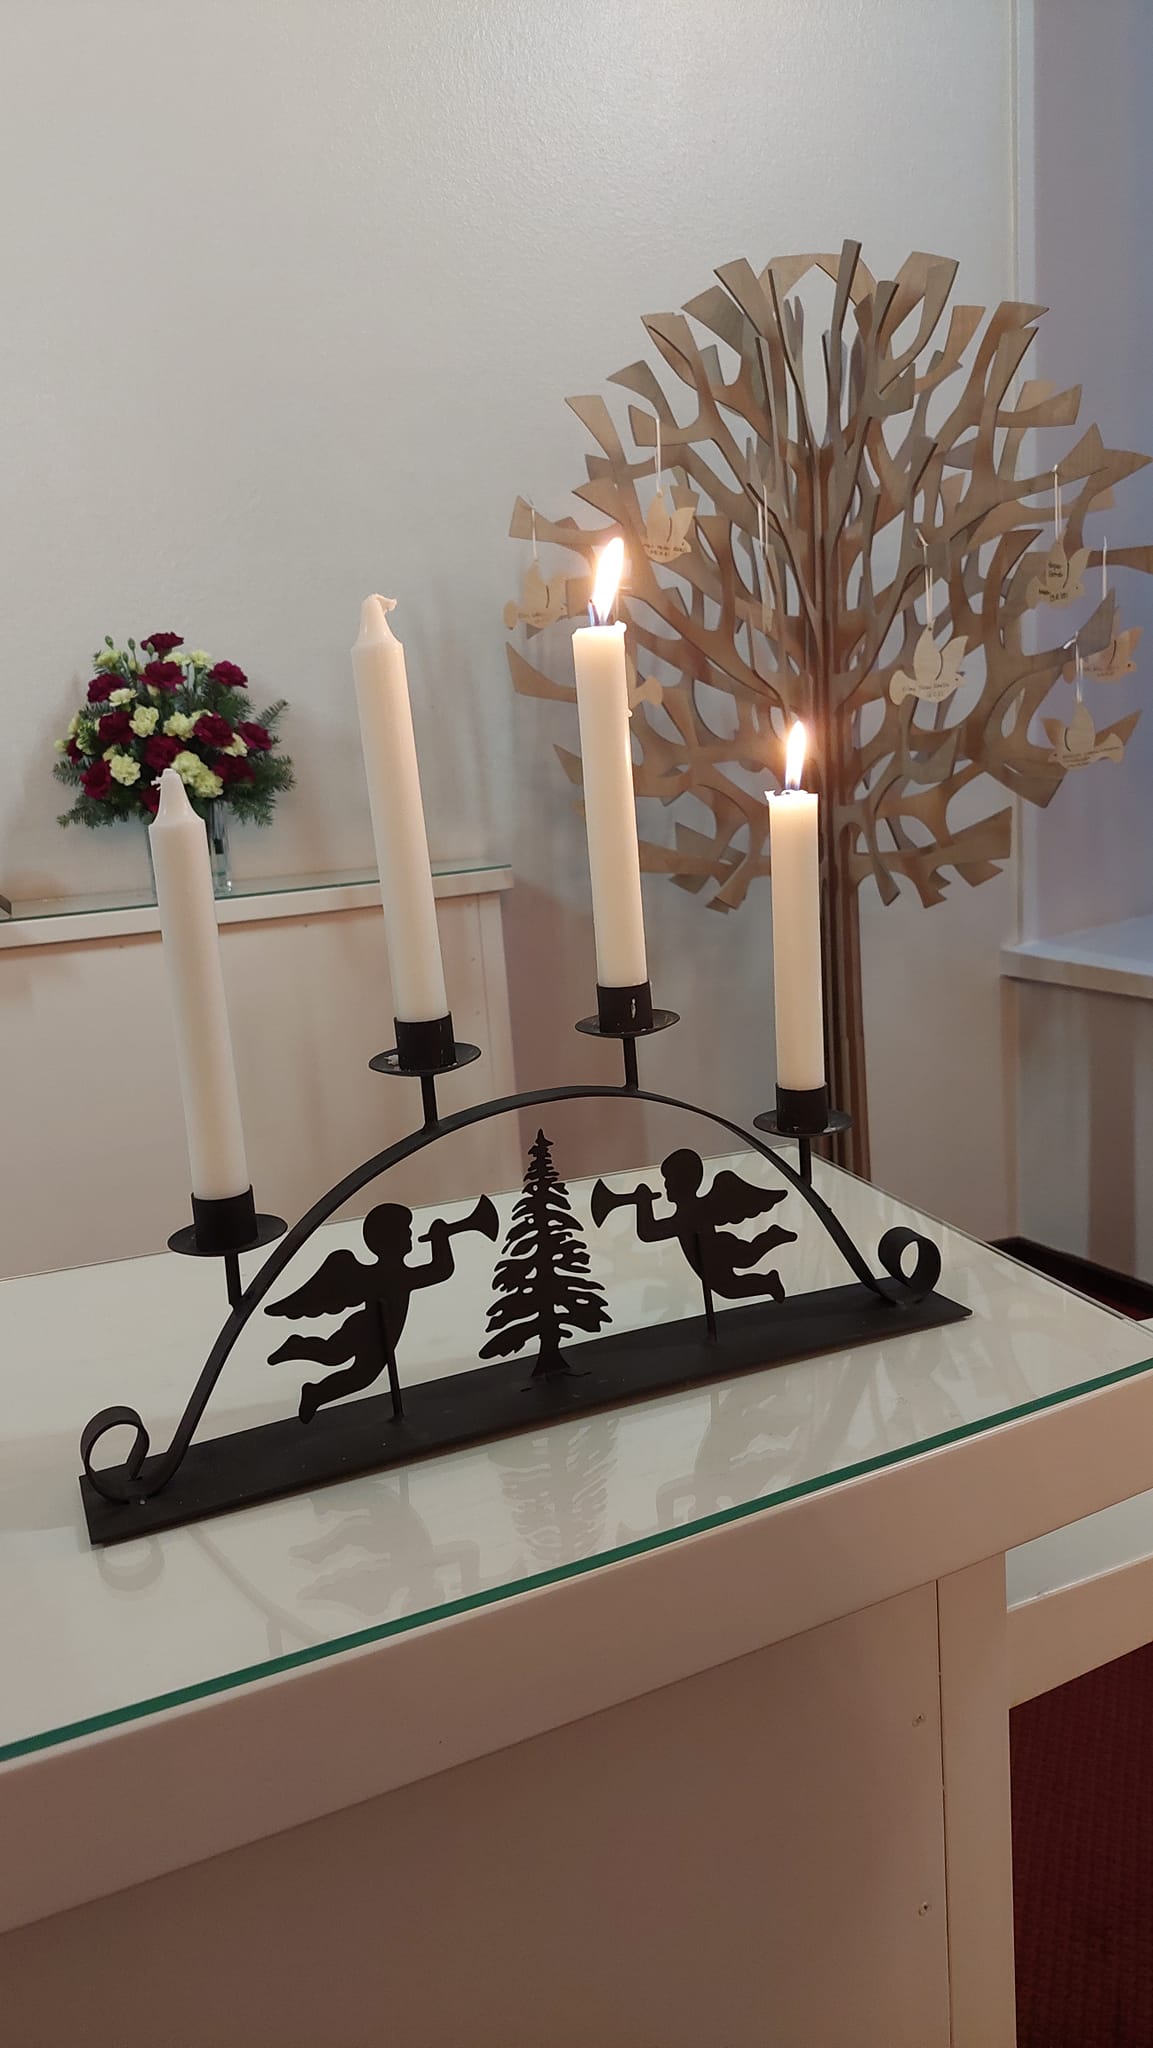 Riistaveden kirkon alttaripöydällä palaa kaksi kynttilää. Taustalla kastepuu.